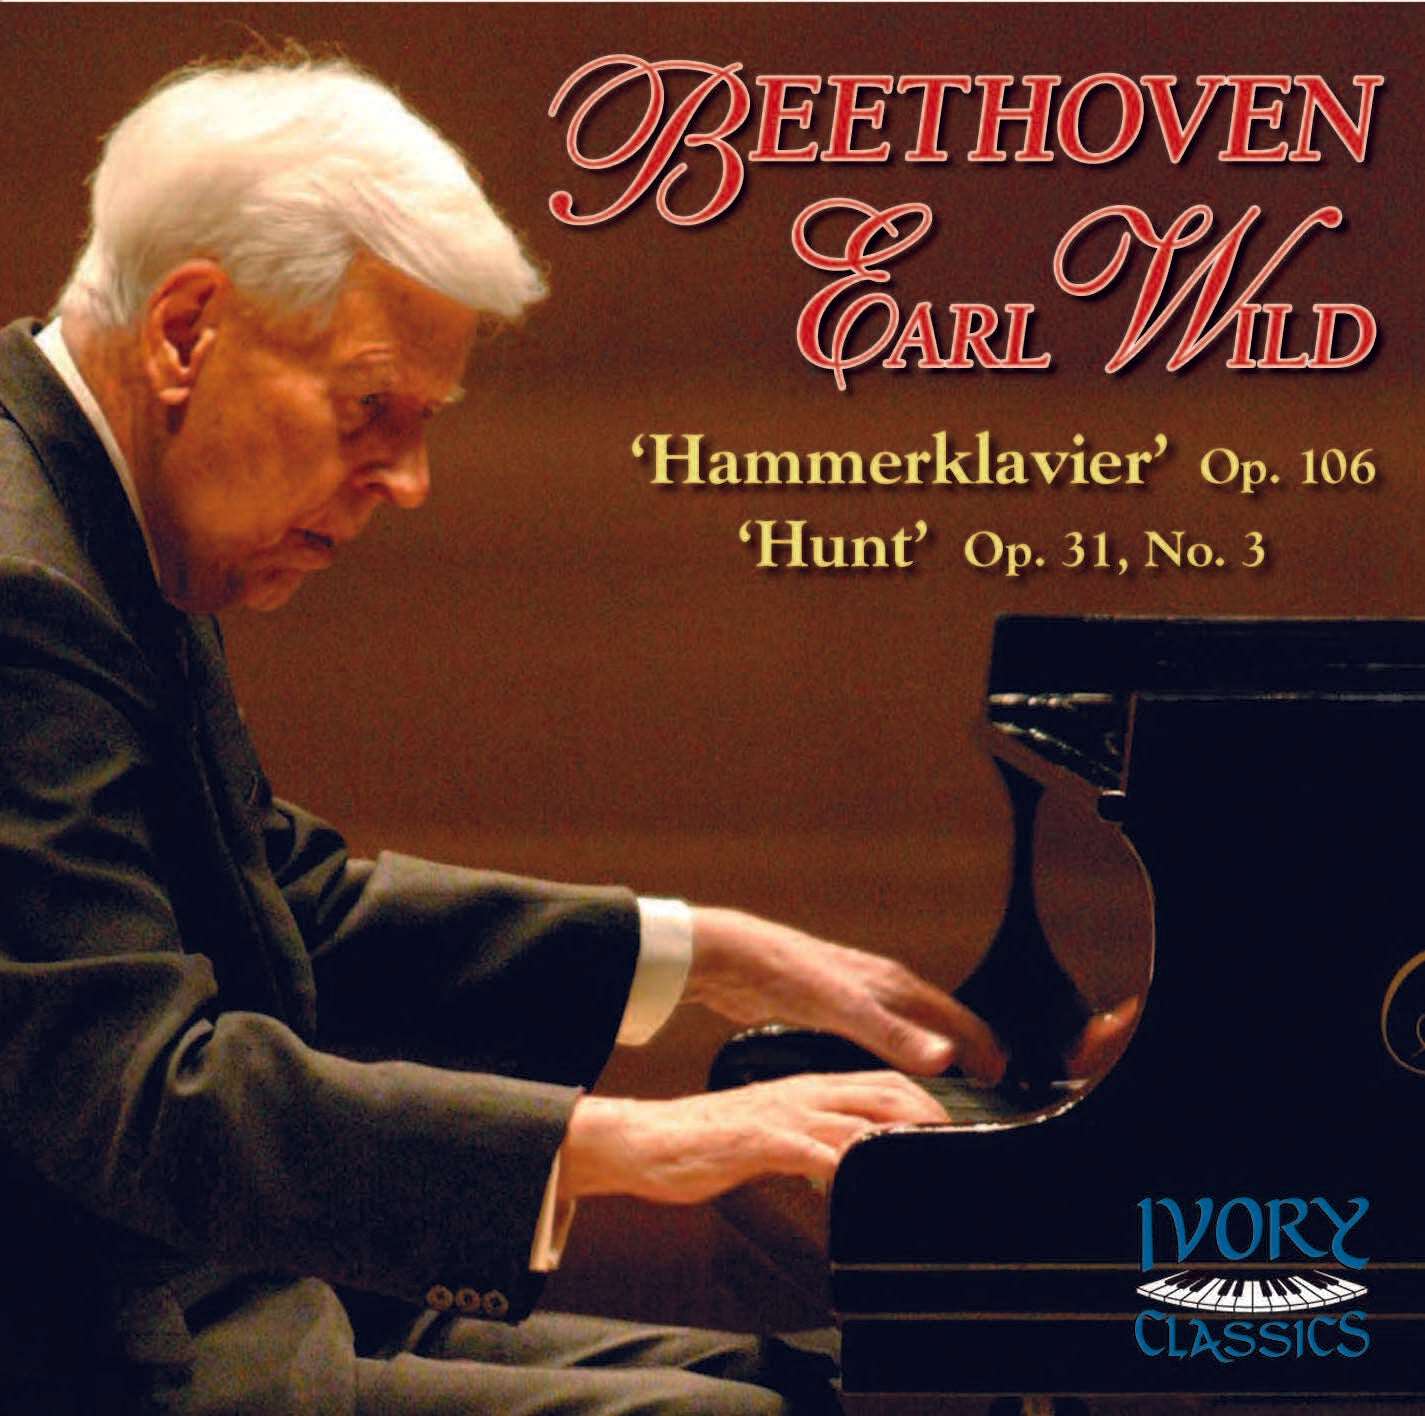 Earl Wild's Beethoven Sonatas: No. 29 'Hammerklavier' & No. 18